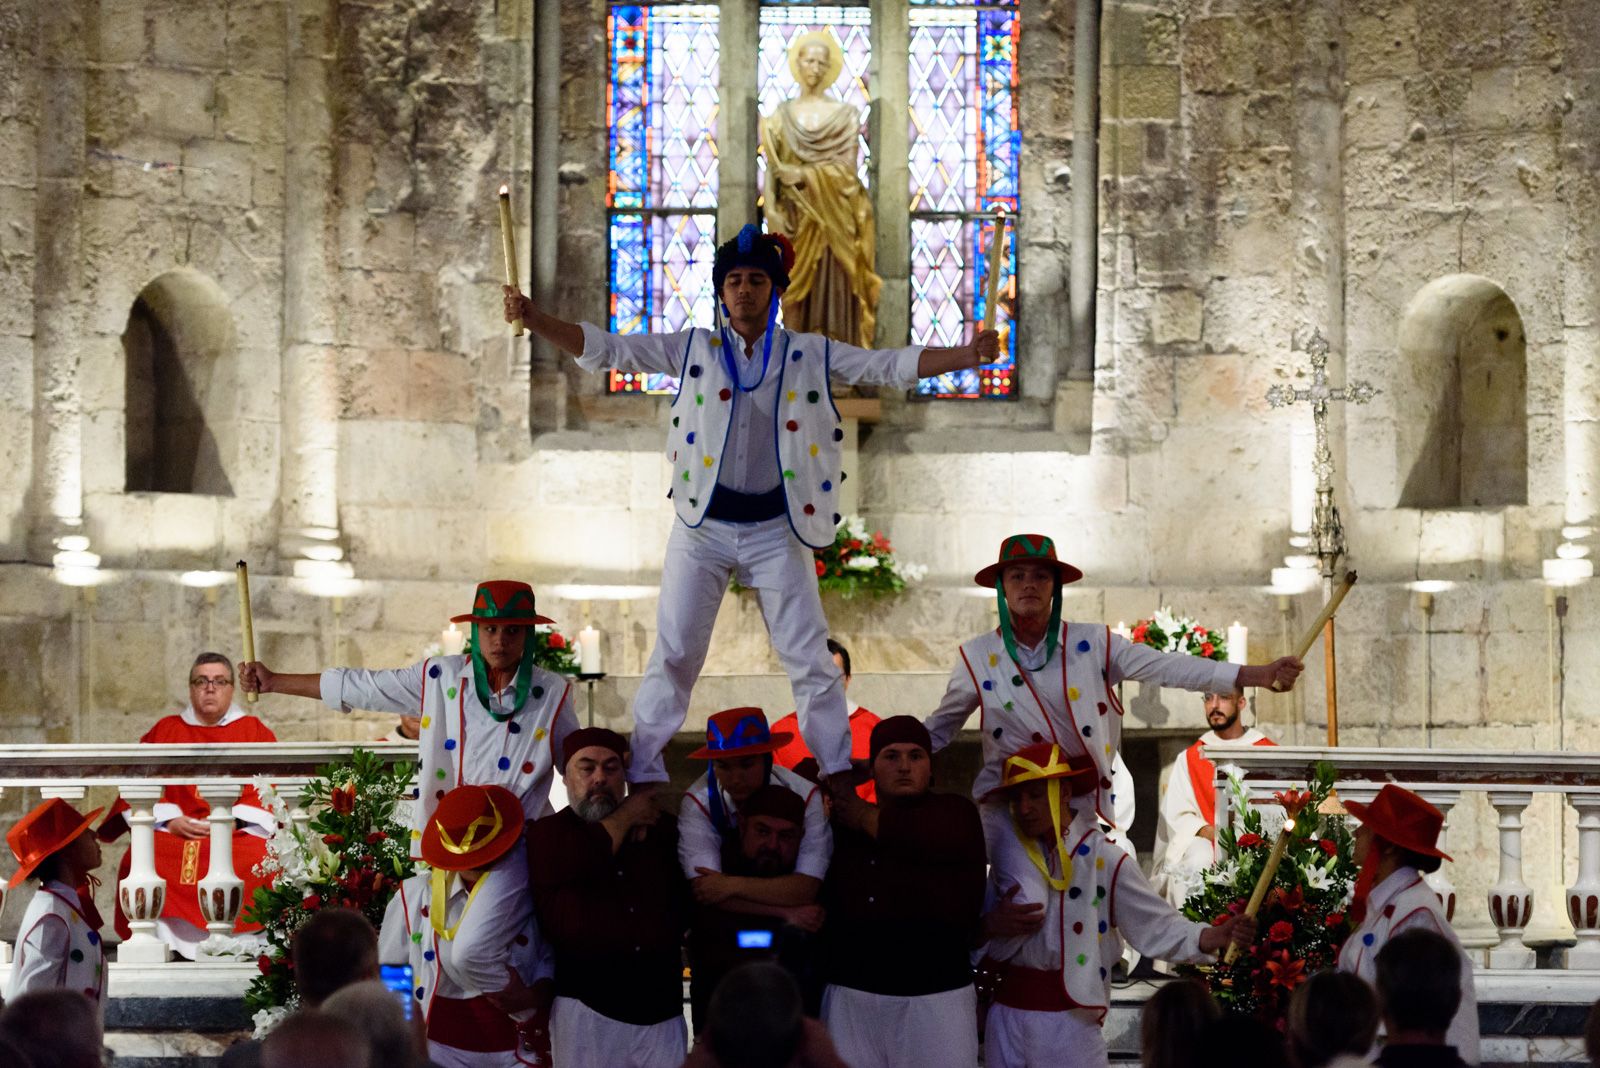 Homenatge a Sant Cugat al Monestir amb la pregària al màrtil i la moixiganga a càrrec de l'esbart dansaire Som Riu d'Or de Sant Fruitós del Bages. Foto: Miguel López Mallach